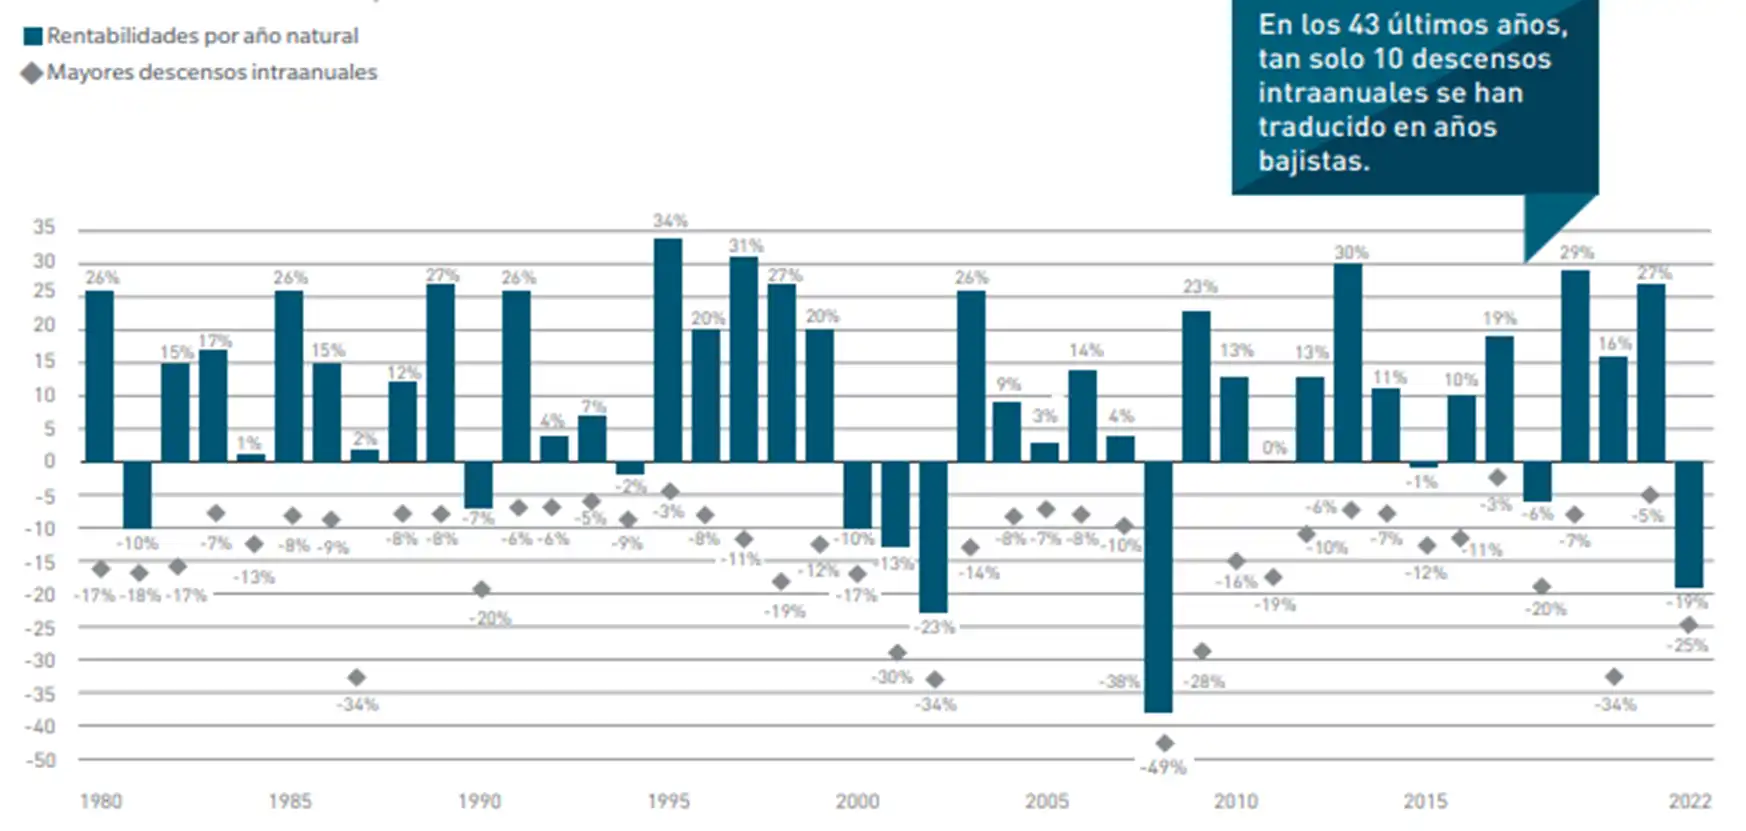 Gráfica comparativa de rentabilidades por año neutral y mayores descensos interanuales. Fuente: MFS, Factset y S&P.